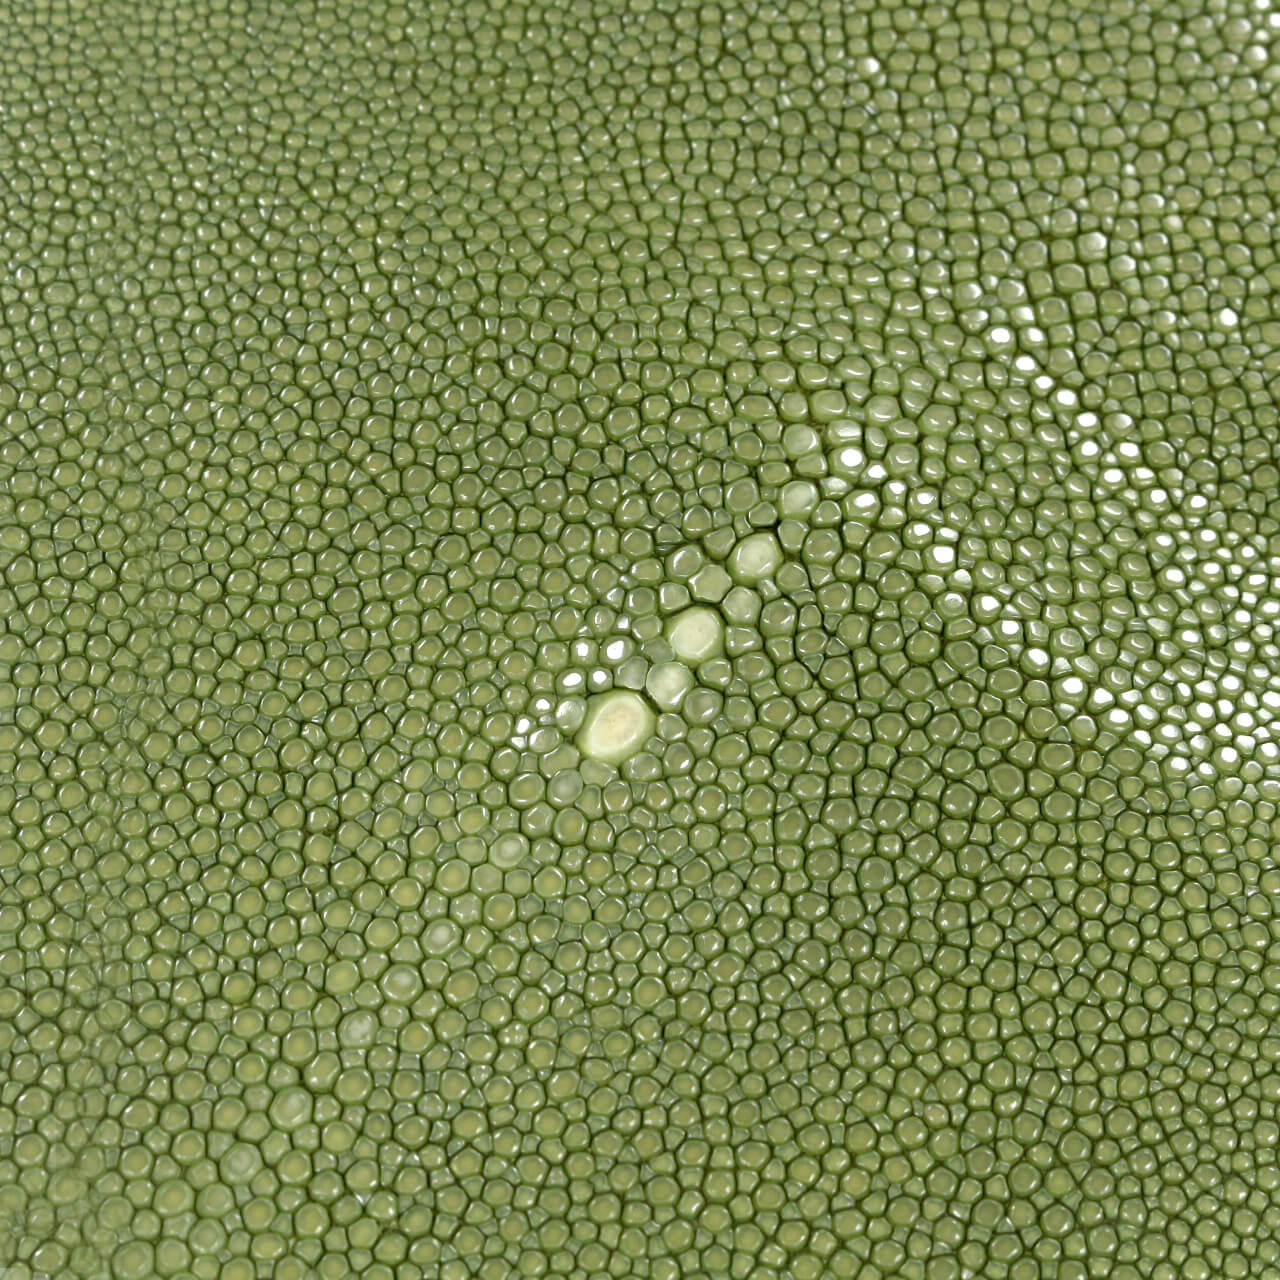 Кожа ската Emilio Pucci 55х20 см, цвет Зеленый, фото 1